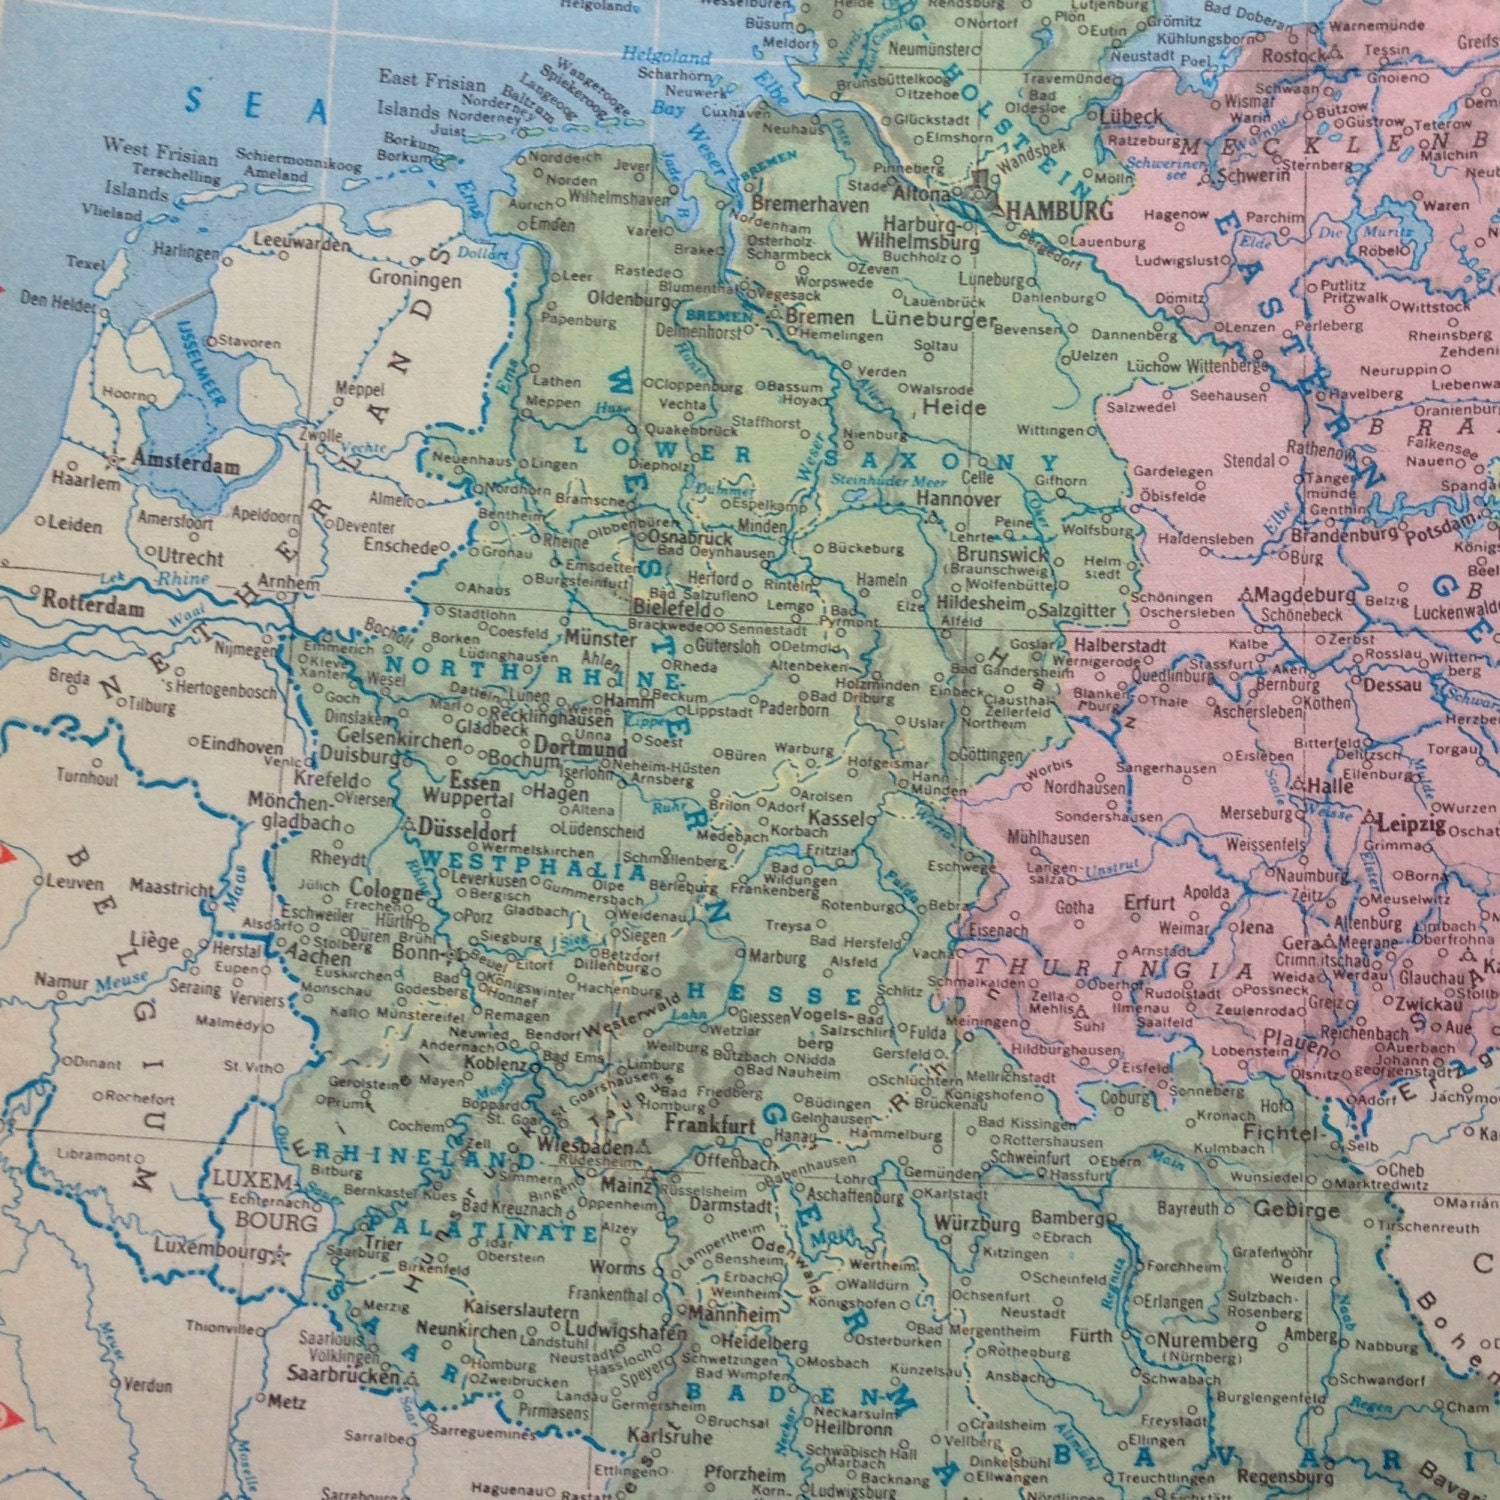 Карта фрг до 1990 года